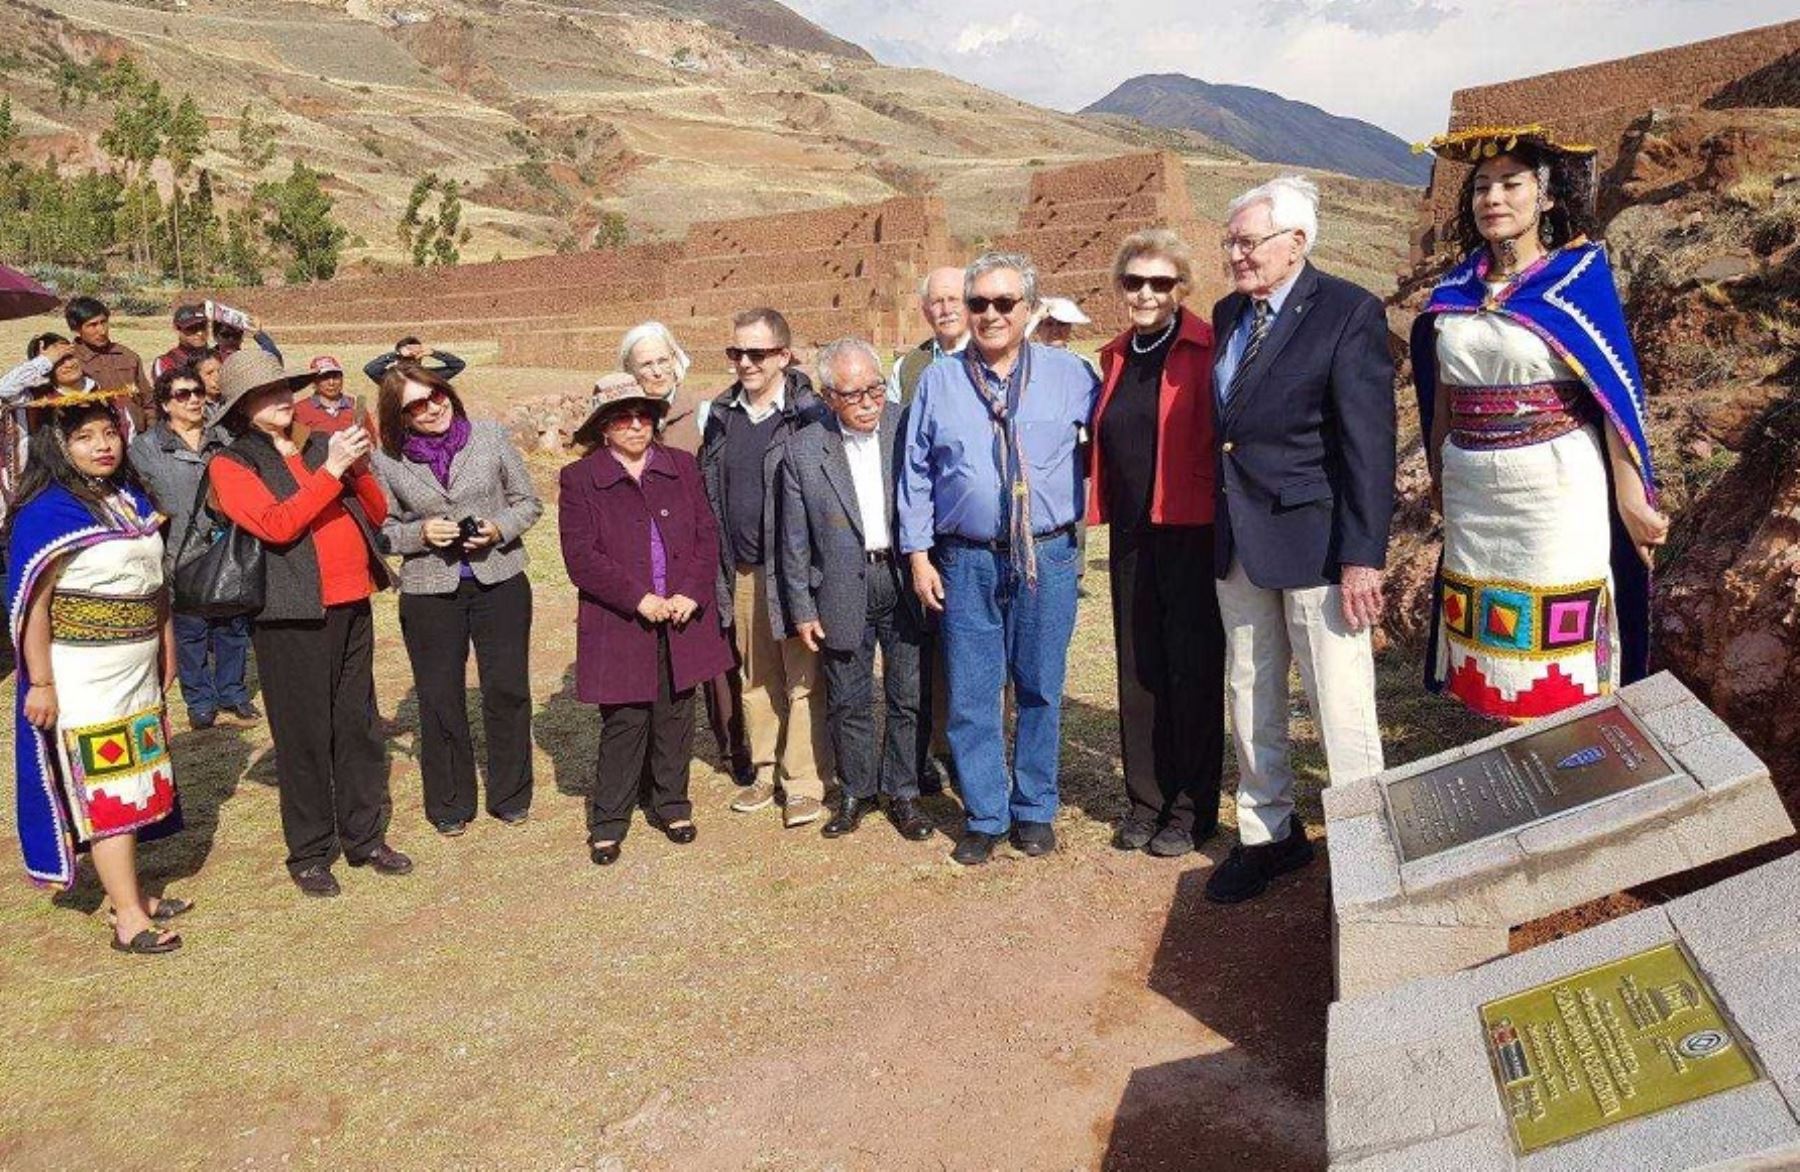 La Sociedad Americana de Ingenieros Civiles reconoció hoy al sistema vial andino Qhapaq Ñan como Emblema Histórico Internacional de la Ingeniría Civil, después de breve acto en la imponente portada del Rumiqolqa, ubicado en el parque arqueológico de Pikillaqta, en la región Cusco.